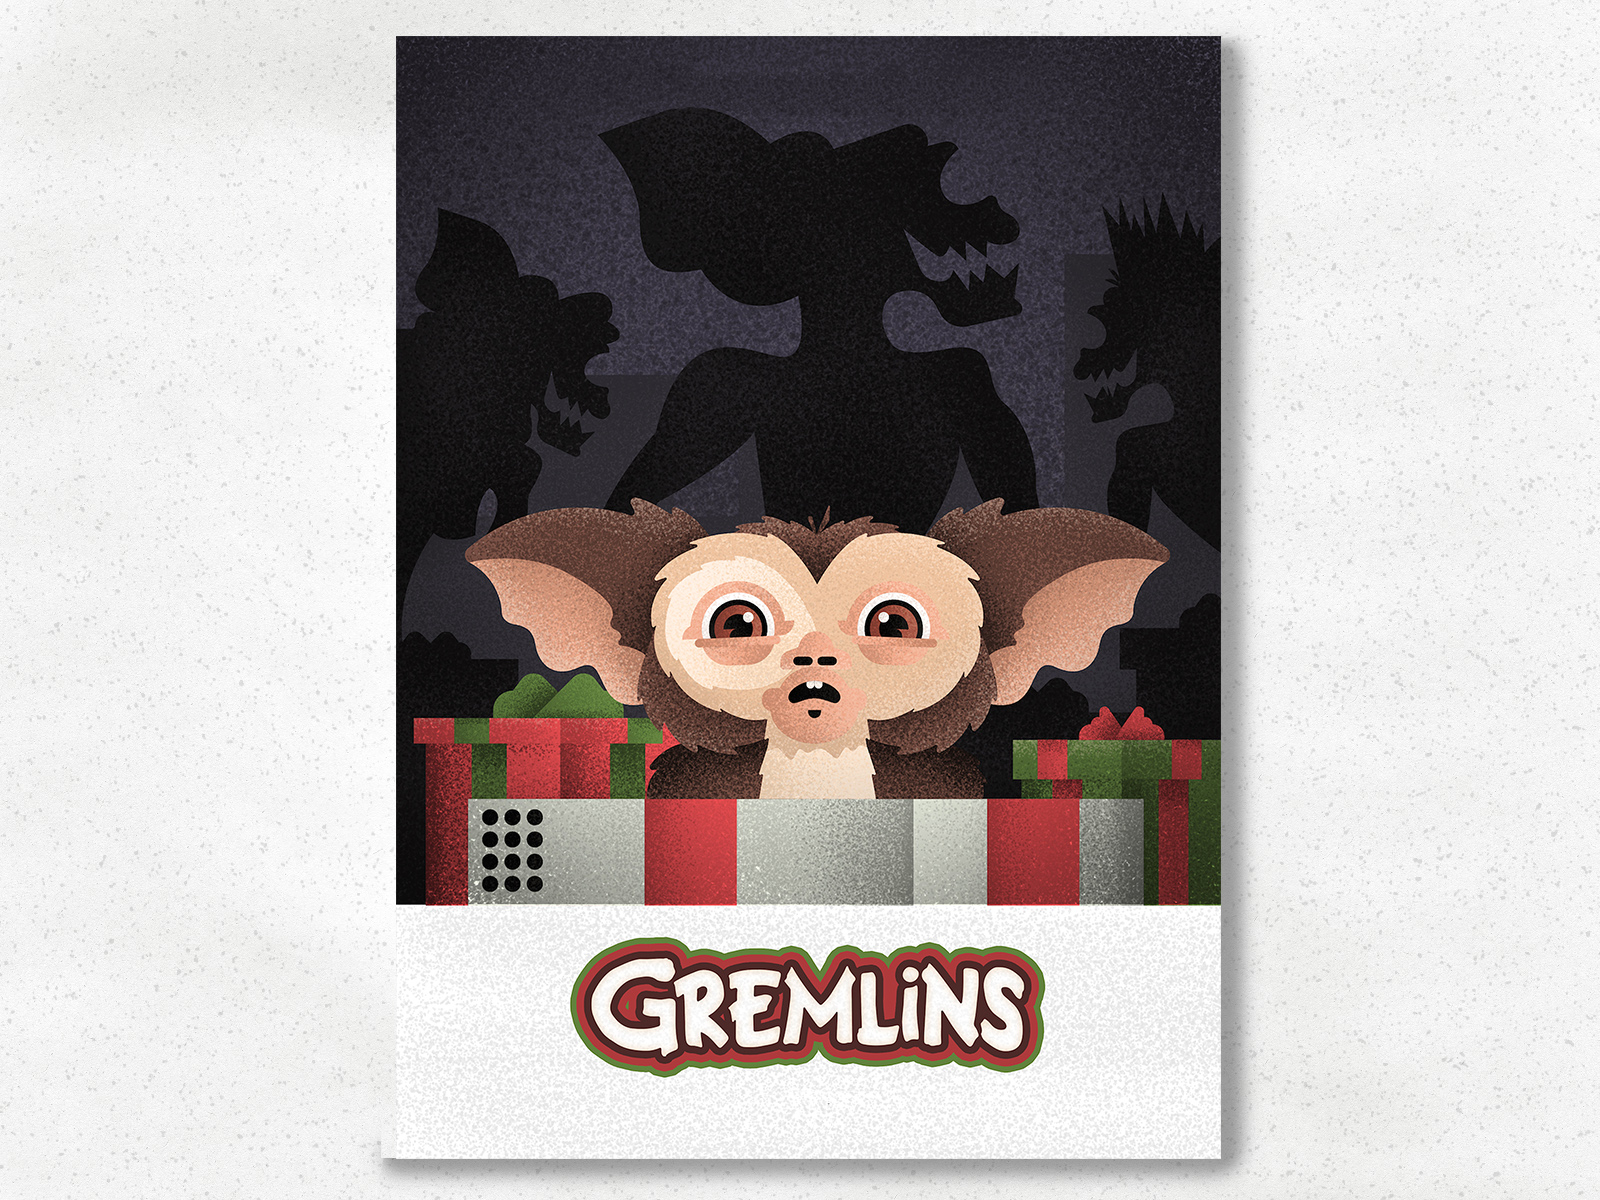 Gremlins 4K by Salmorejo Studio on Dribbble